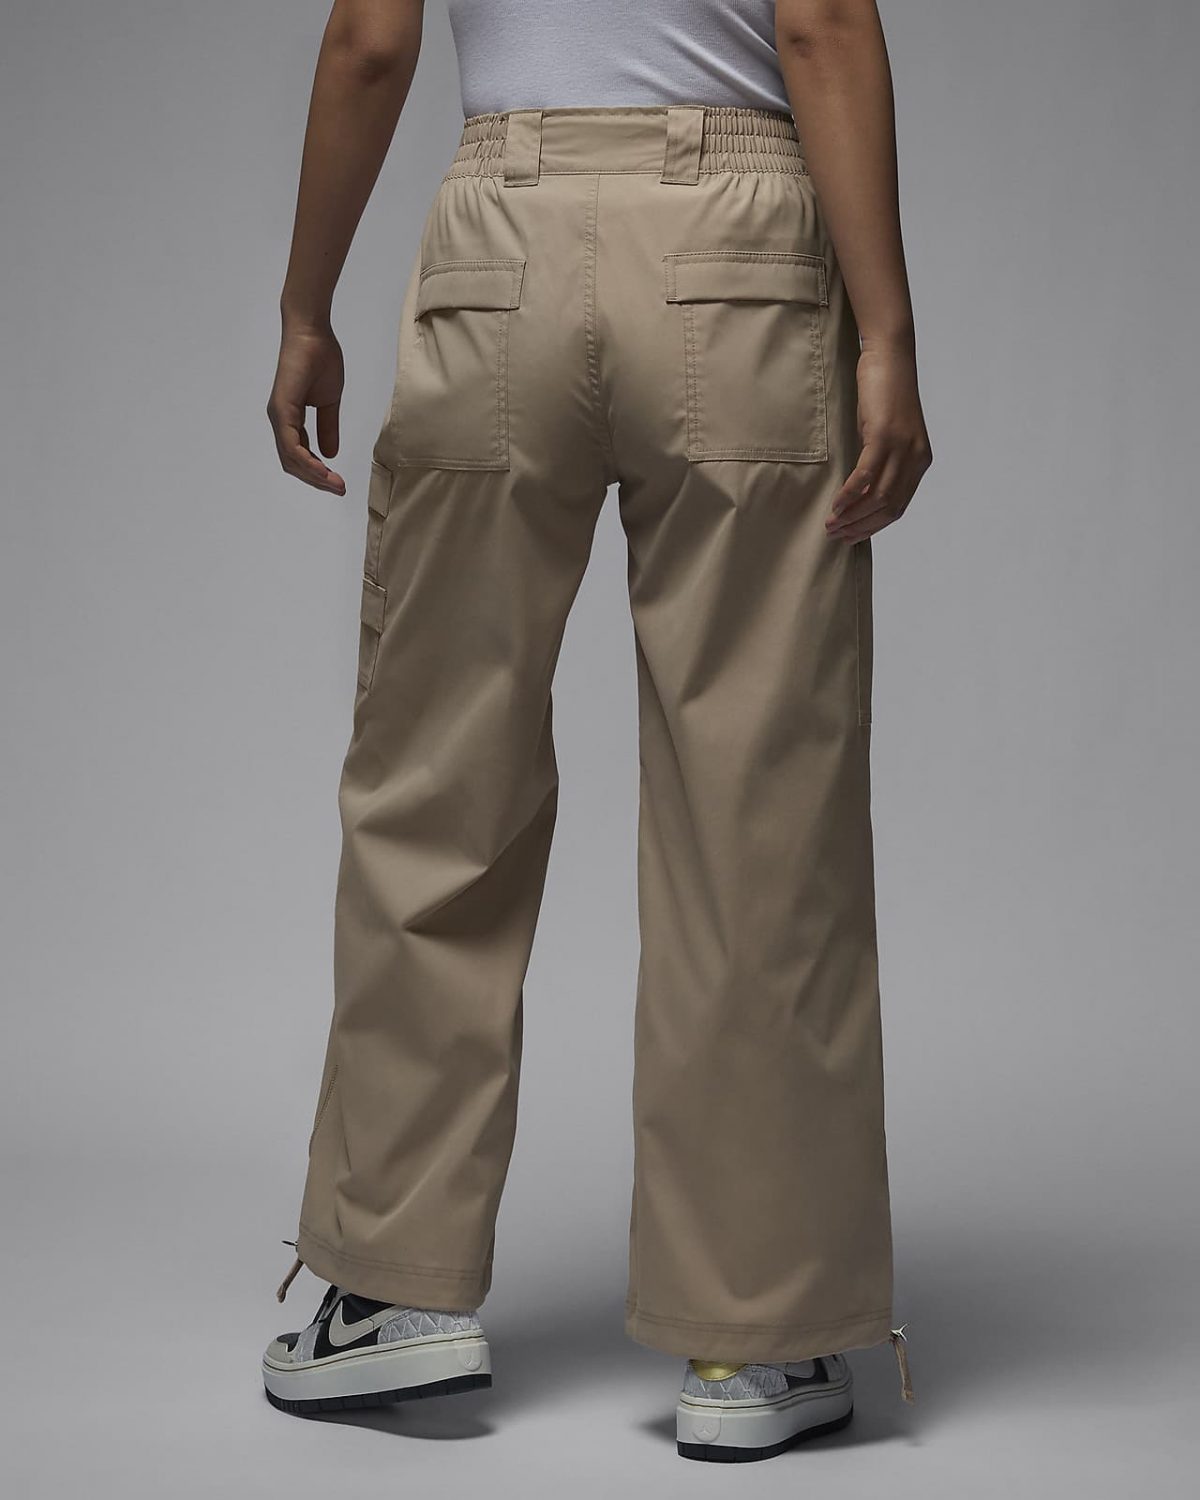 Женские брюки nike Jordan Chicago коричневые фотография